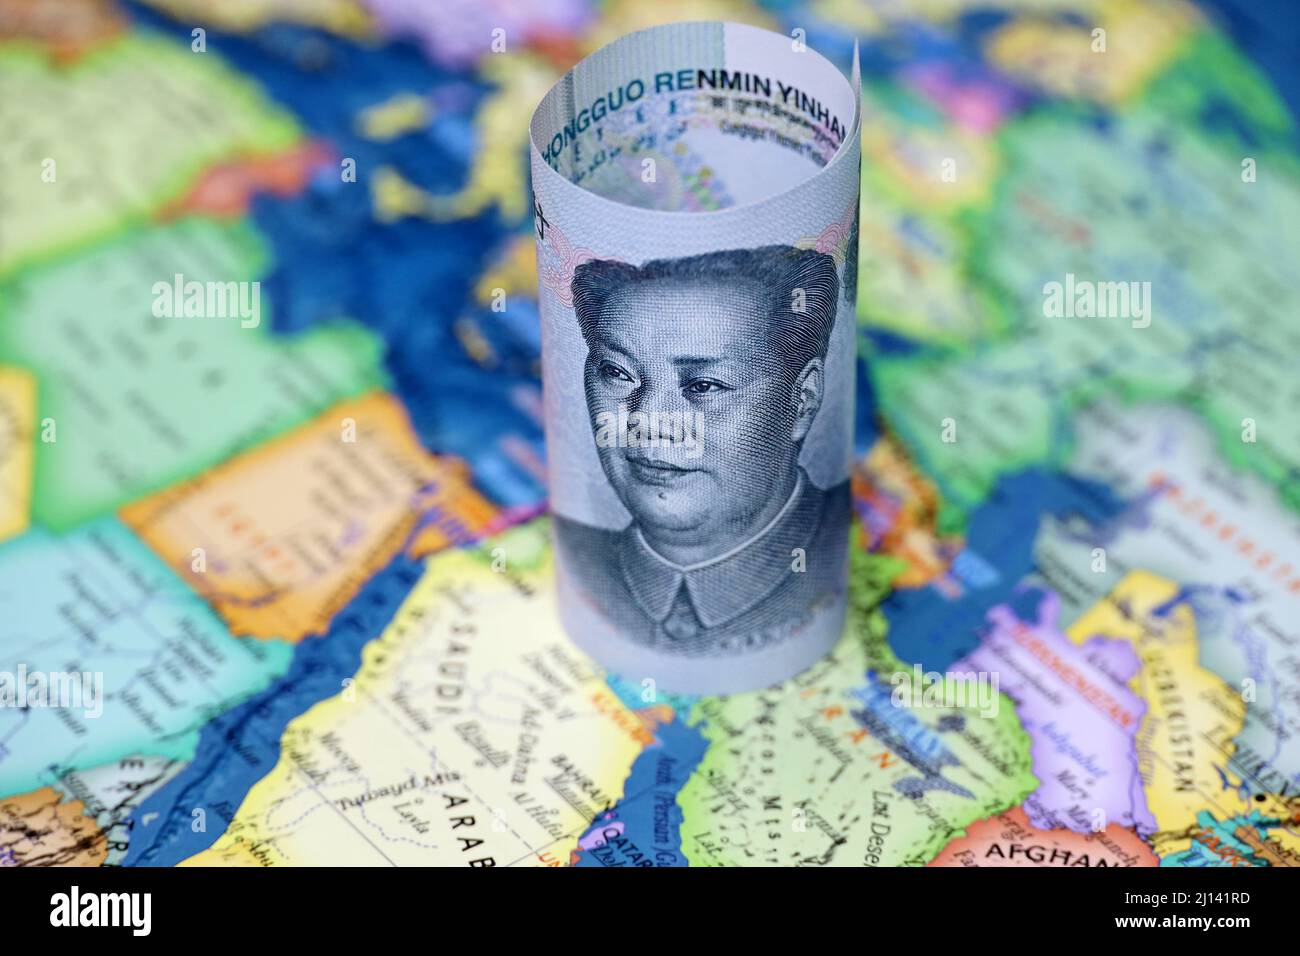 Yuan chinois sur la carte de l'Arabie saoudite et de l'Iran. Concept d'achat de pétrole, coopération économique entre les pays de Pékin et du golfe Persique Banque D'Images